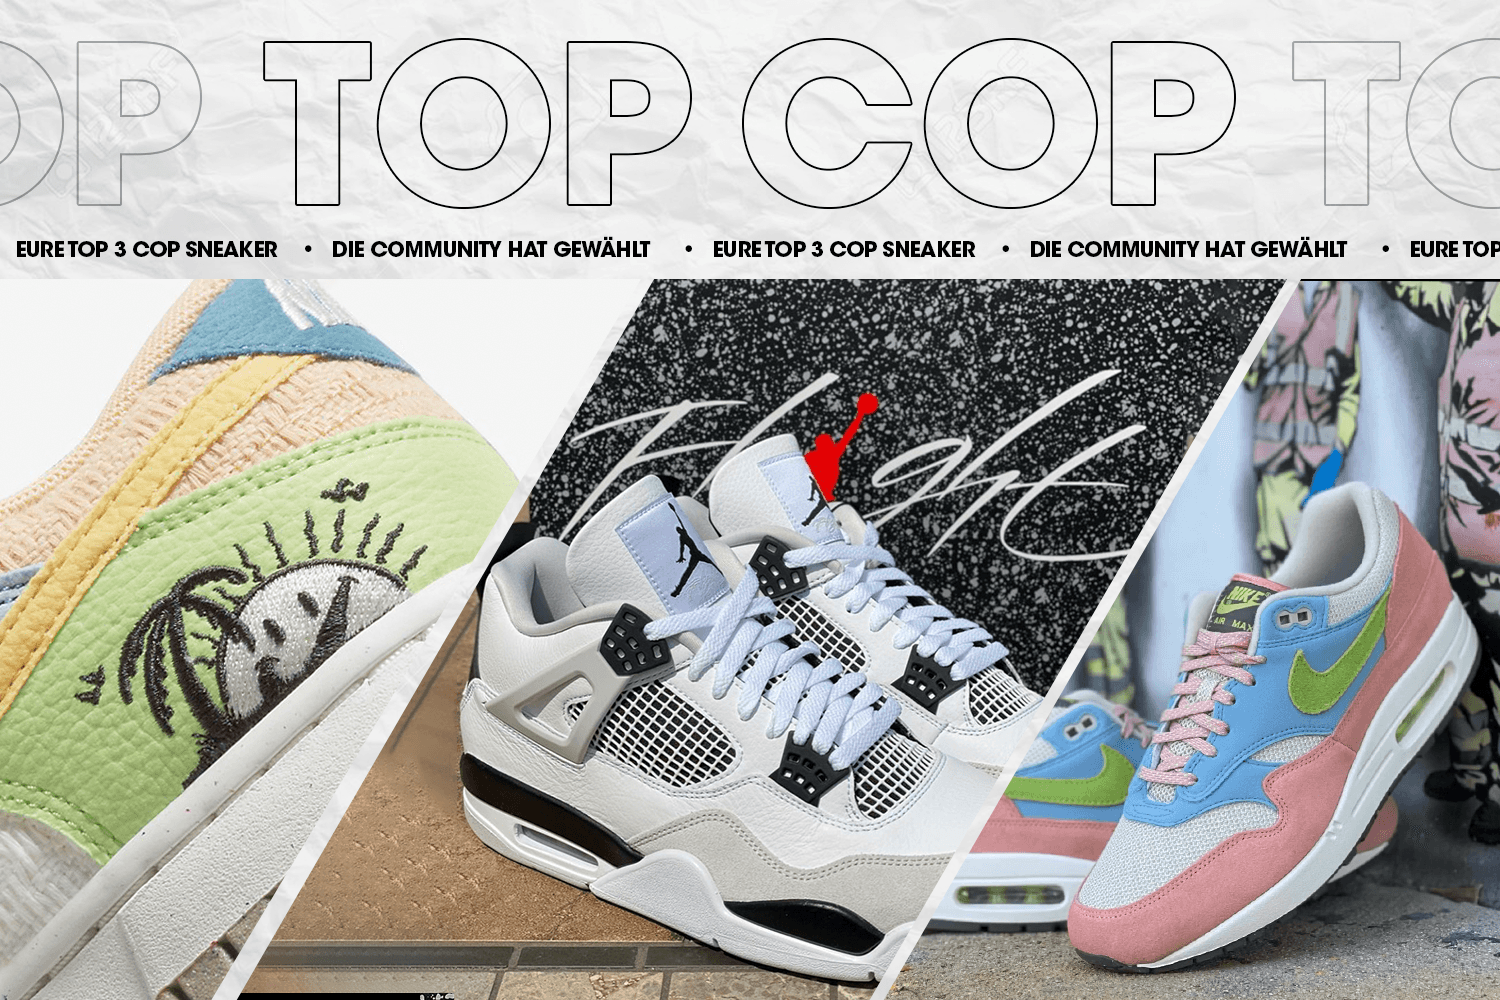 Die Community hat gewählt: Eure Top 3 Cop Sneaker Woche 20